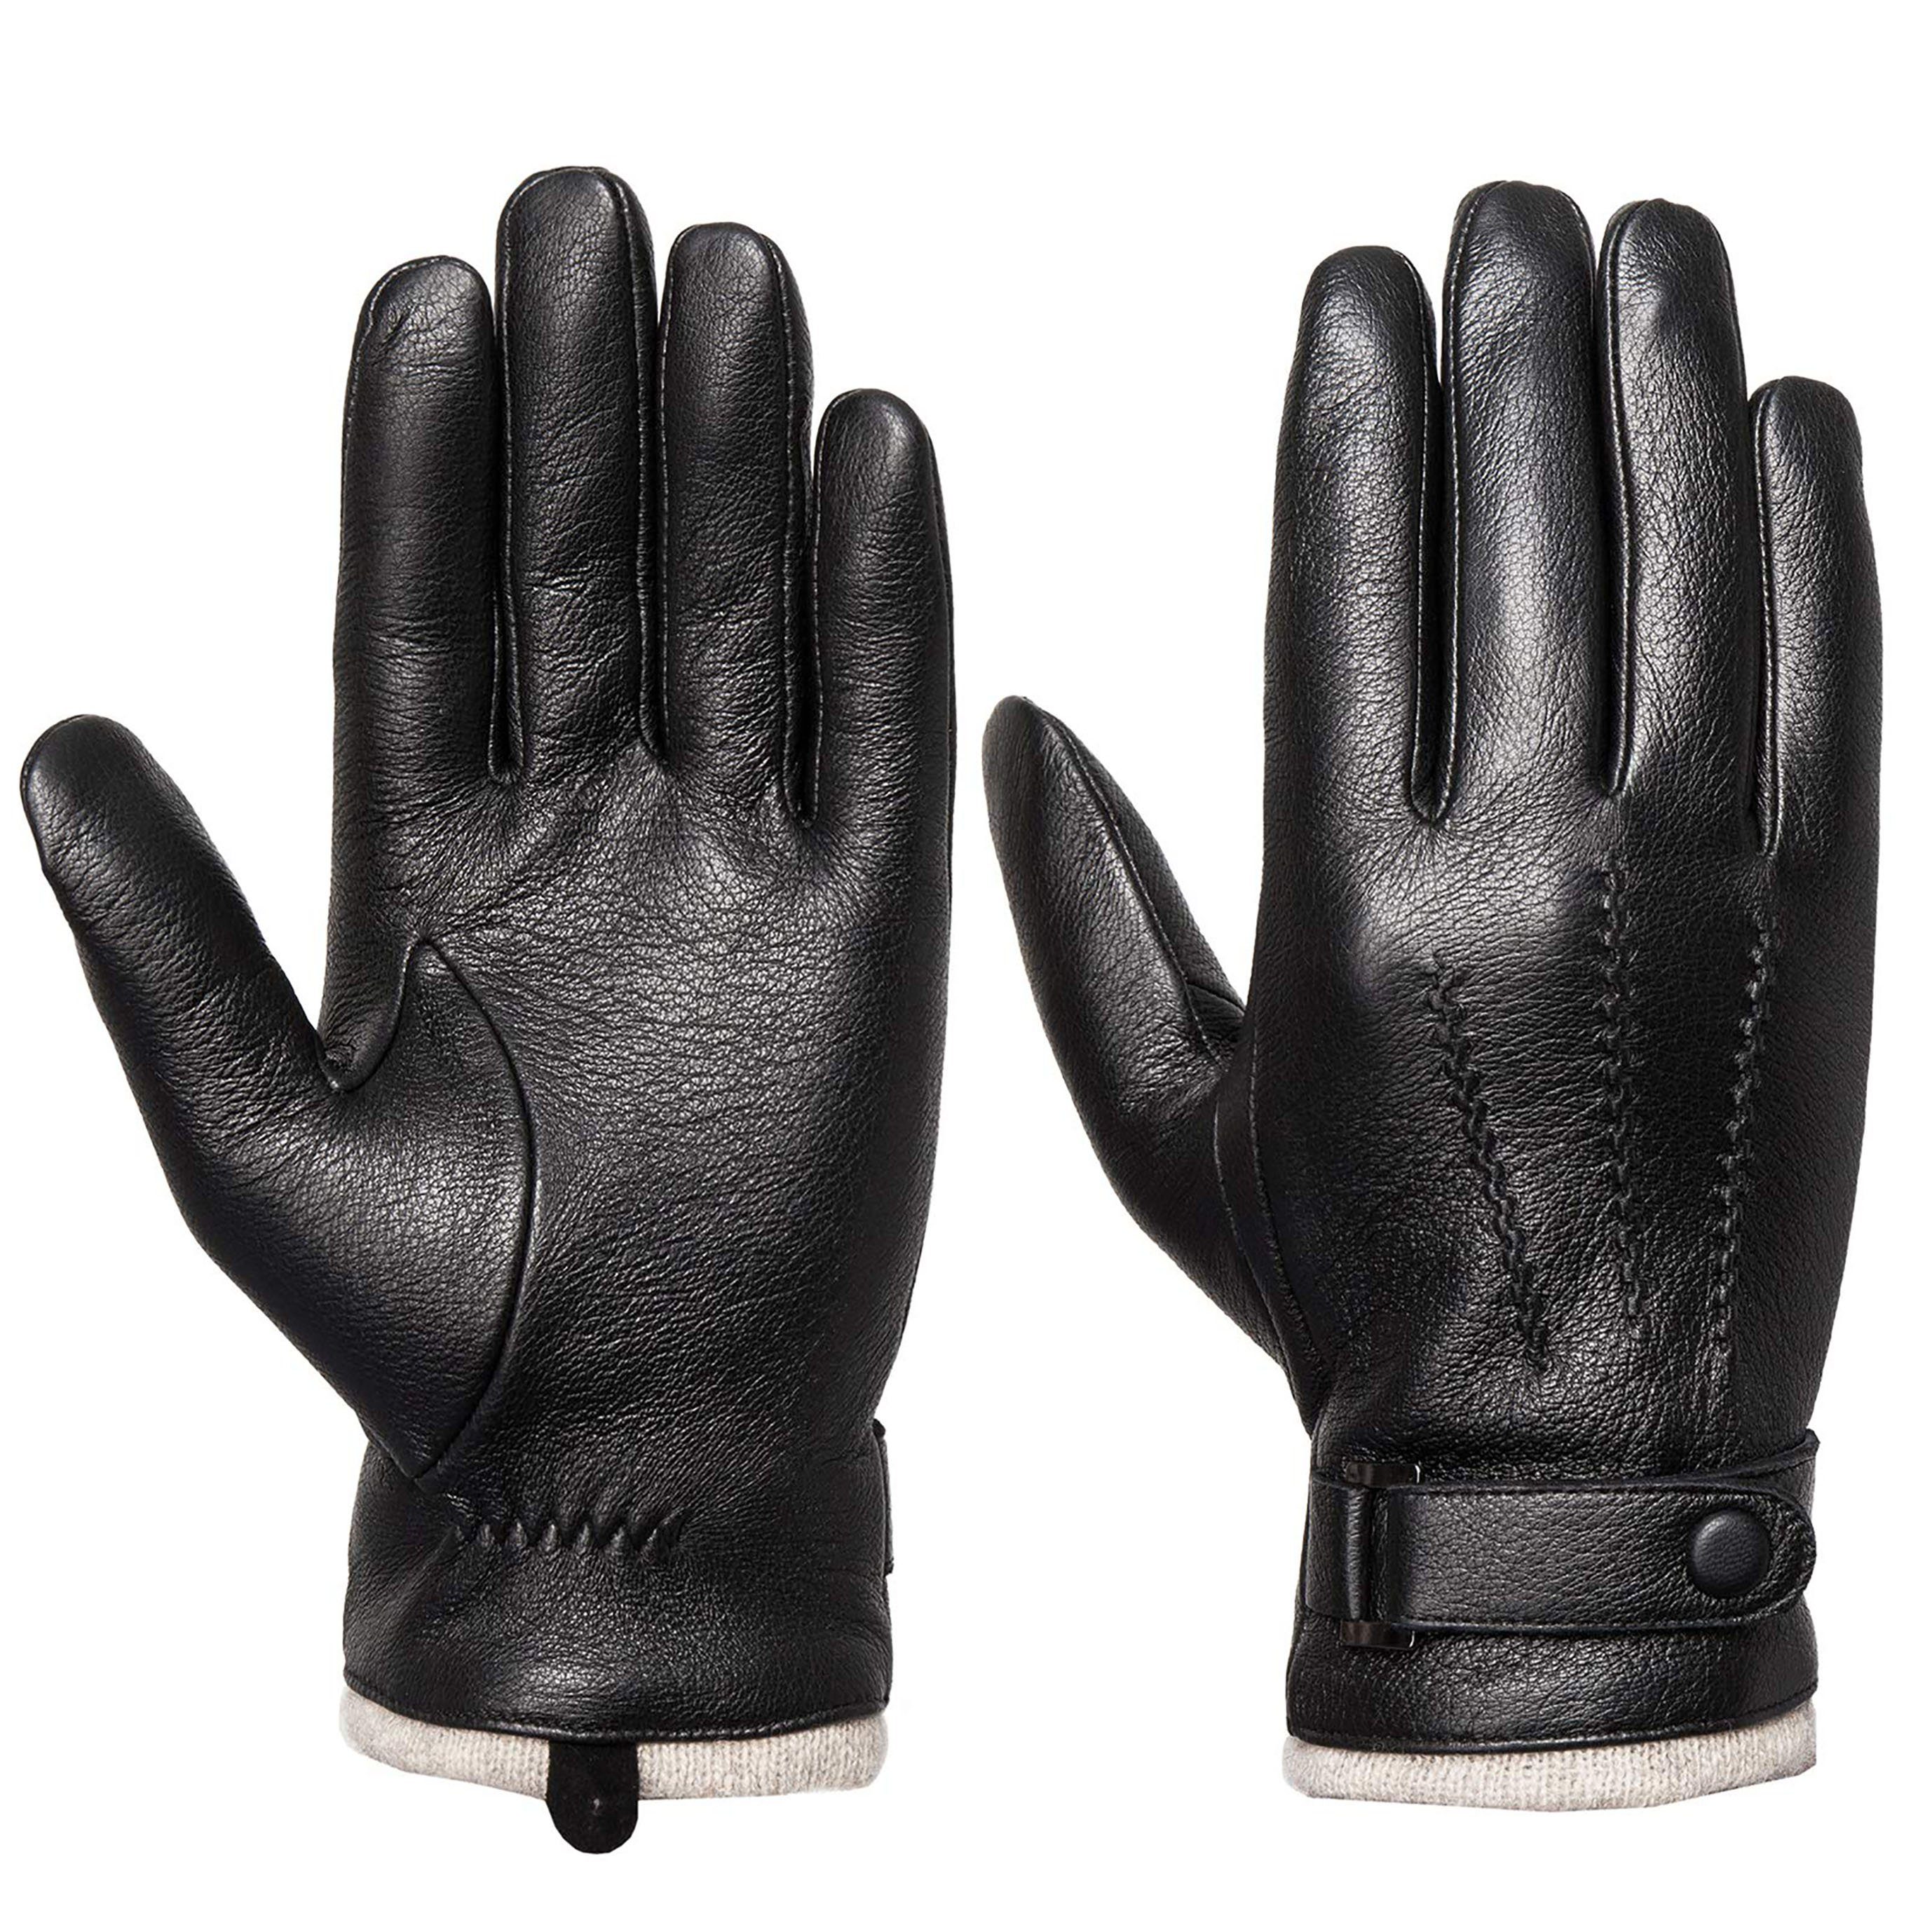 Tapferer Ping Lederhandschuhe Herren Leder Touchscreen Winter Handschuhe